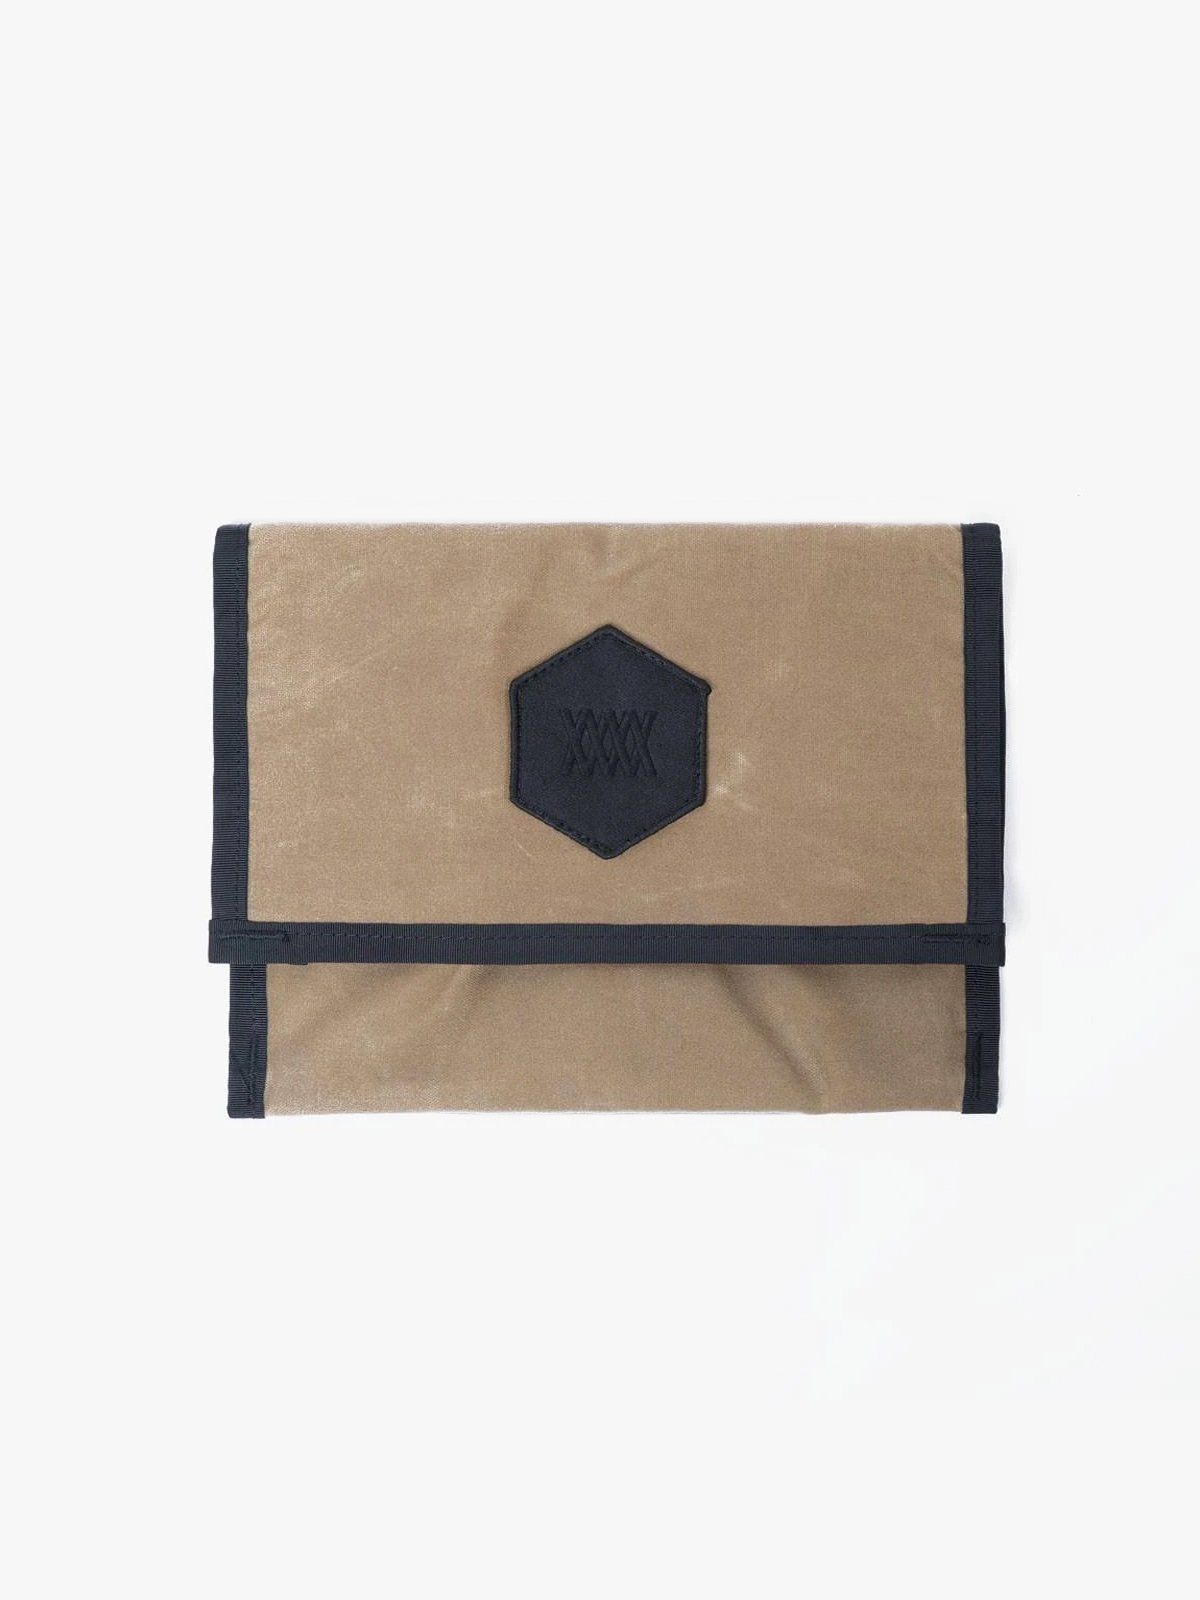 Arkiv Mini Folio by Mission Workshop - Weerbestendige tassen & technische kleding - San Francisco & Los Angeles - Gebouwd om te weerstaan - Voor altijd gegarandeerd